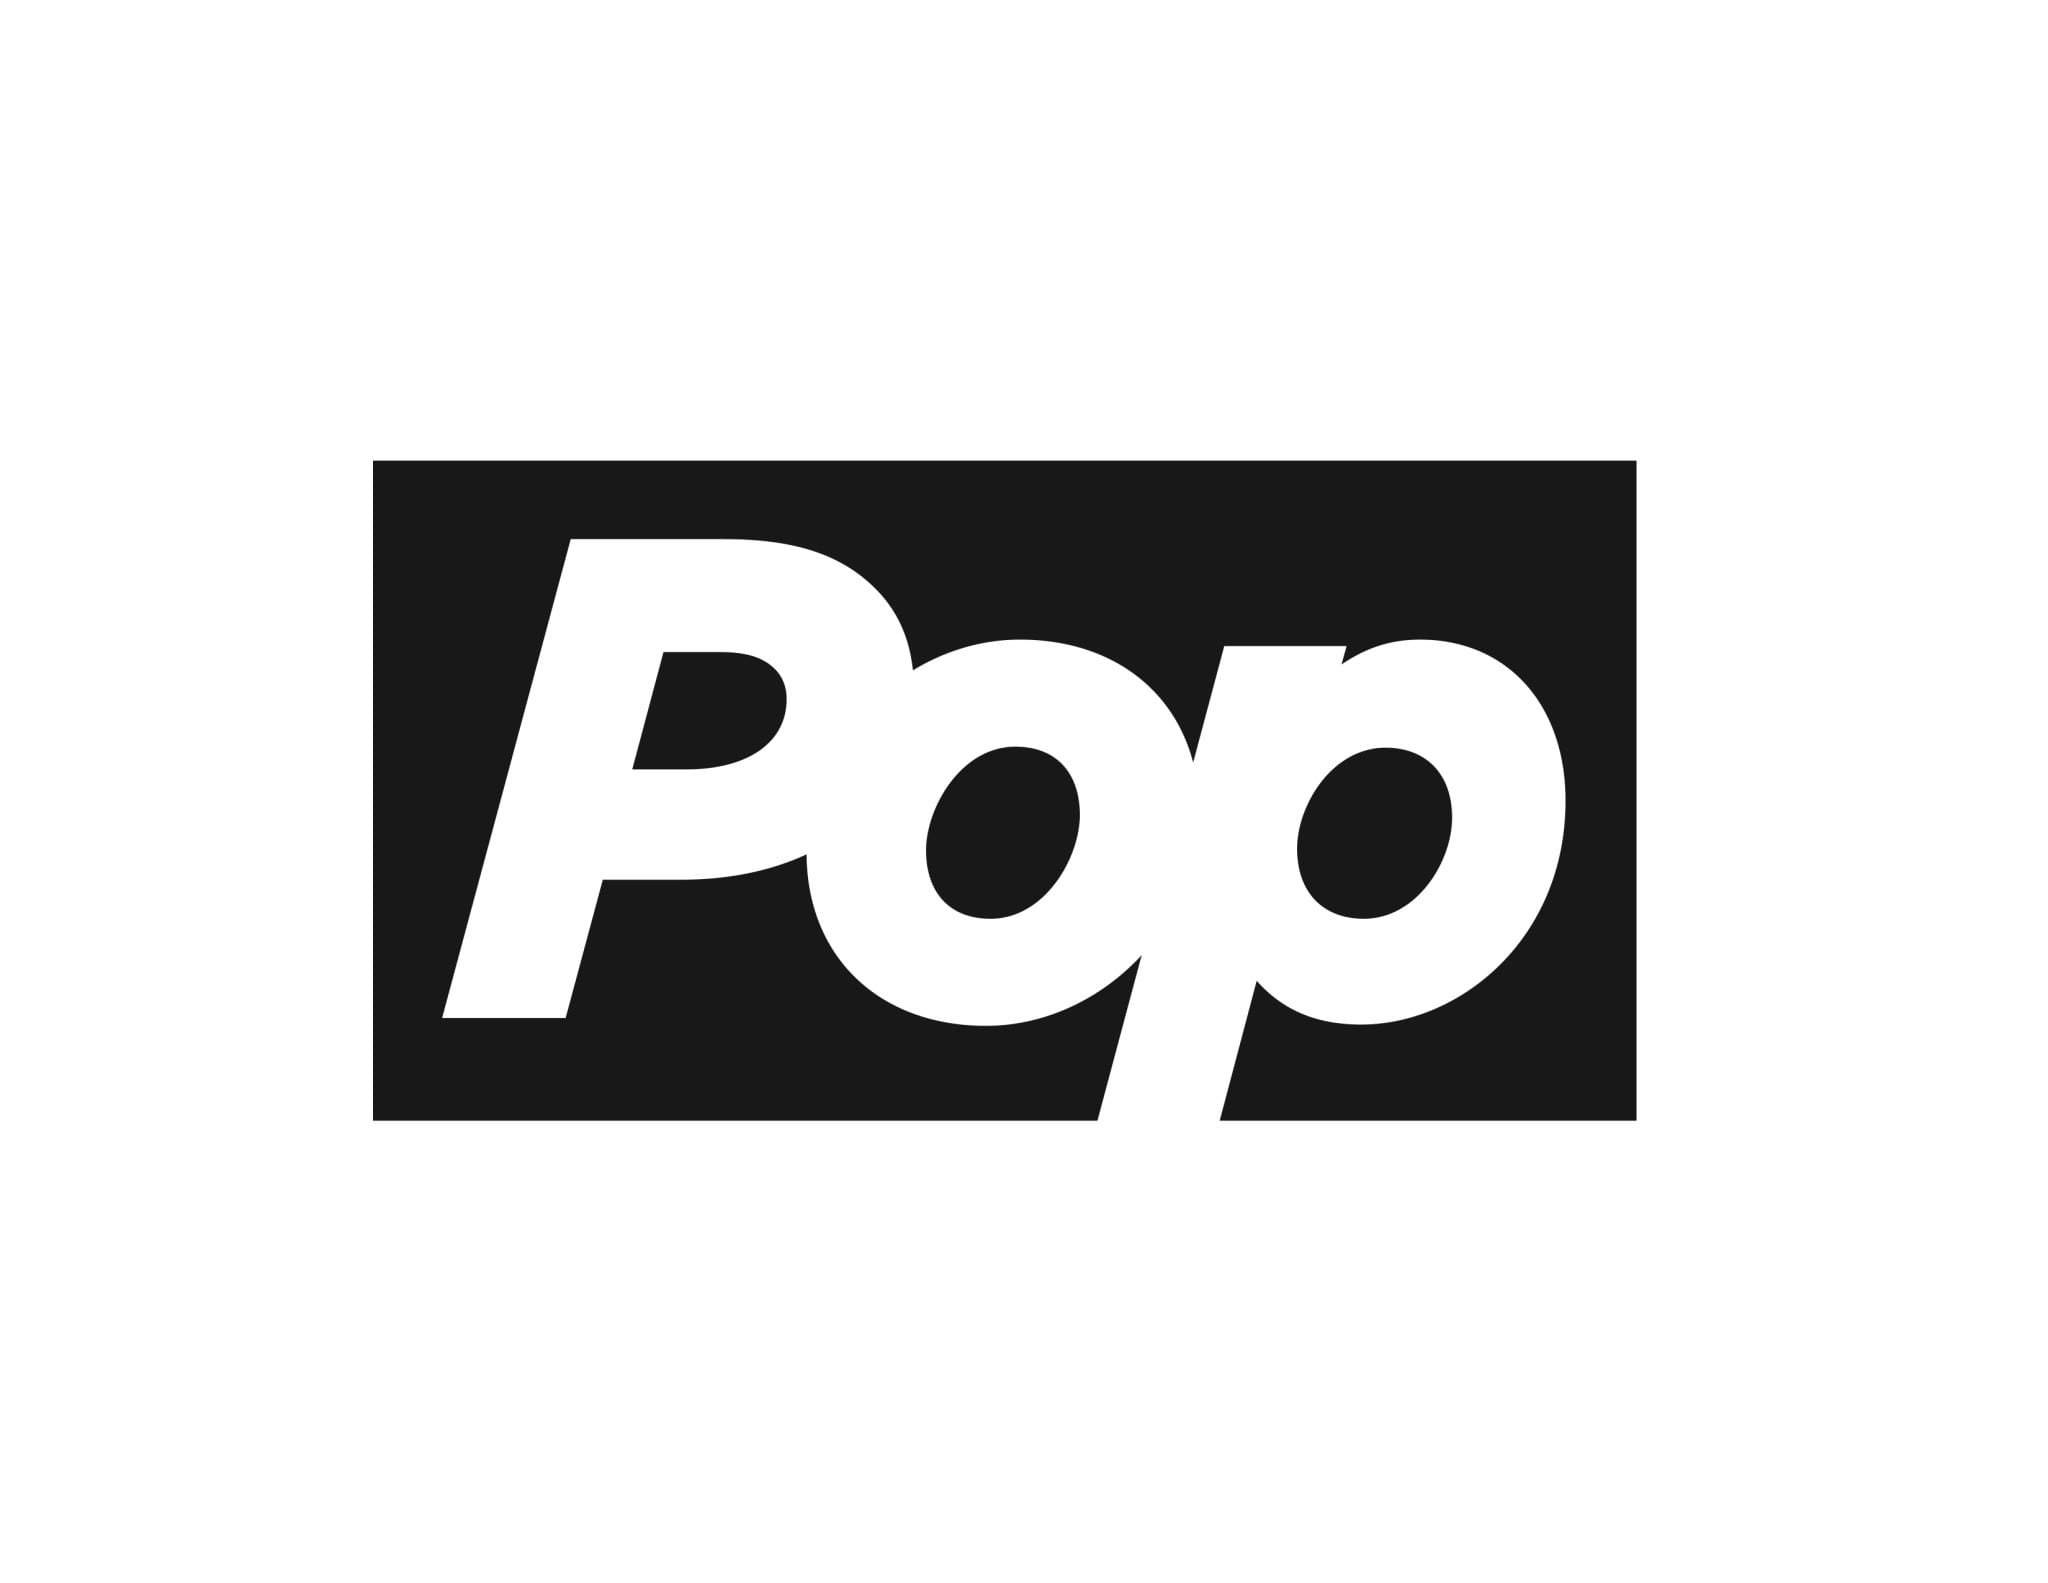 Pop программа. Pop logo. К-рор логотип. ФАНКО поп логотип. Pop it логотип.